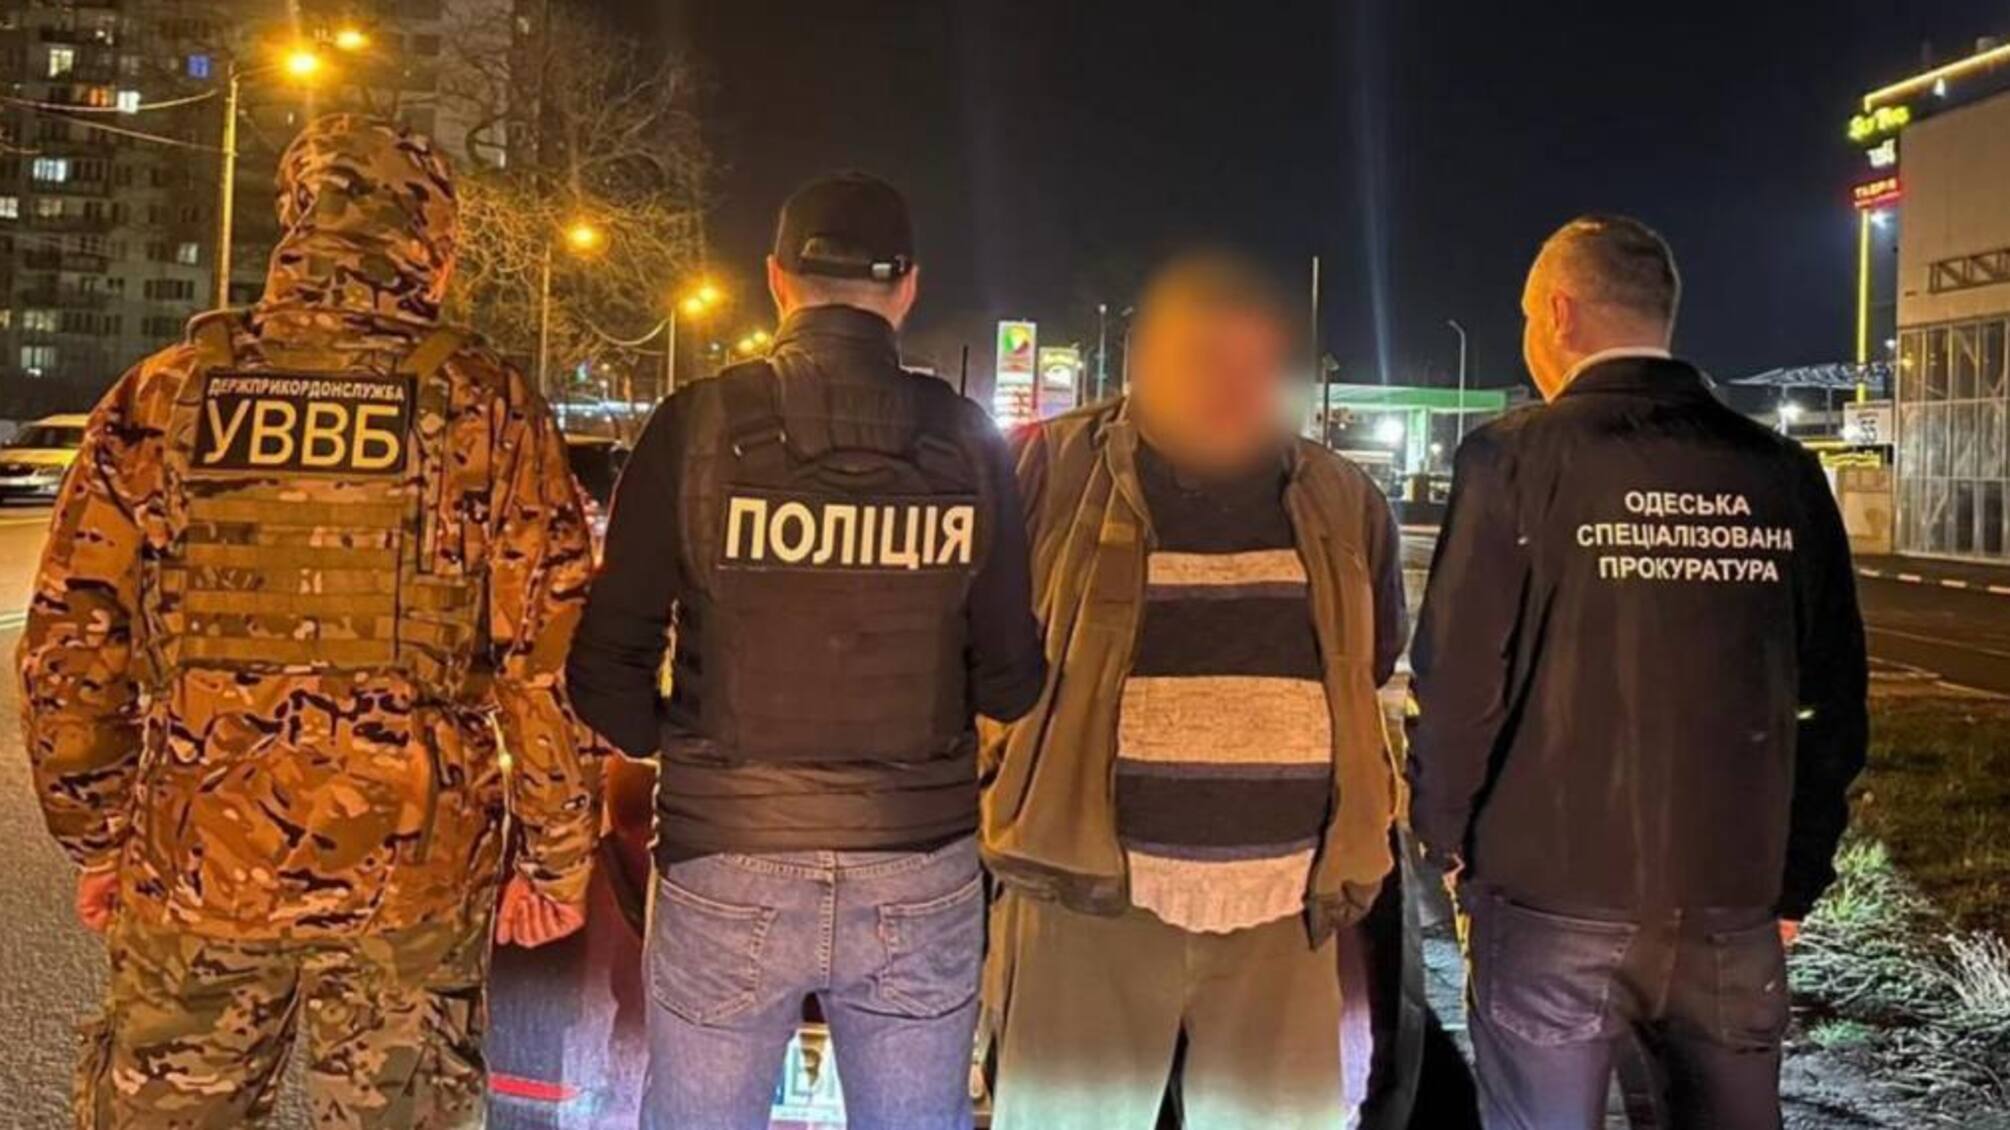 4,5 тис. дол за 'звільнення від служби': на Одещині затримала торговця фальшивими документами